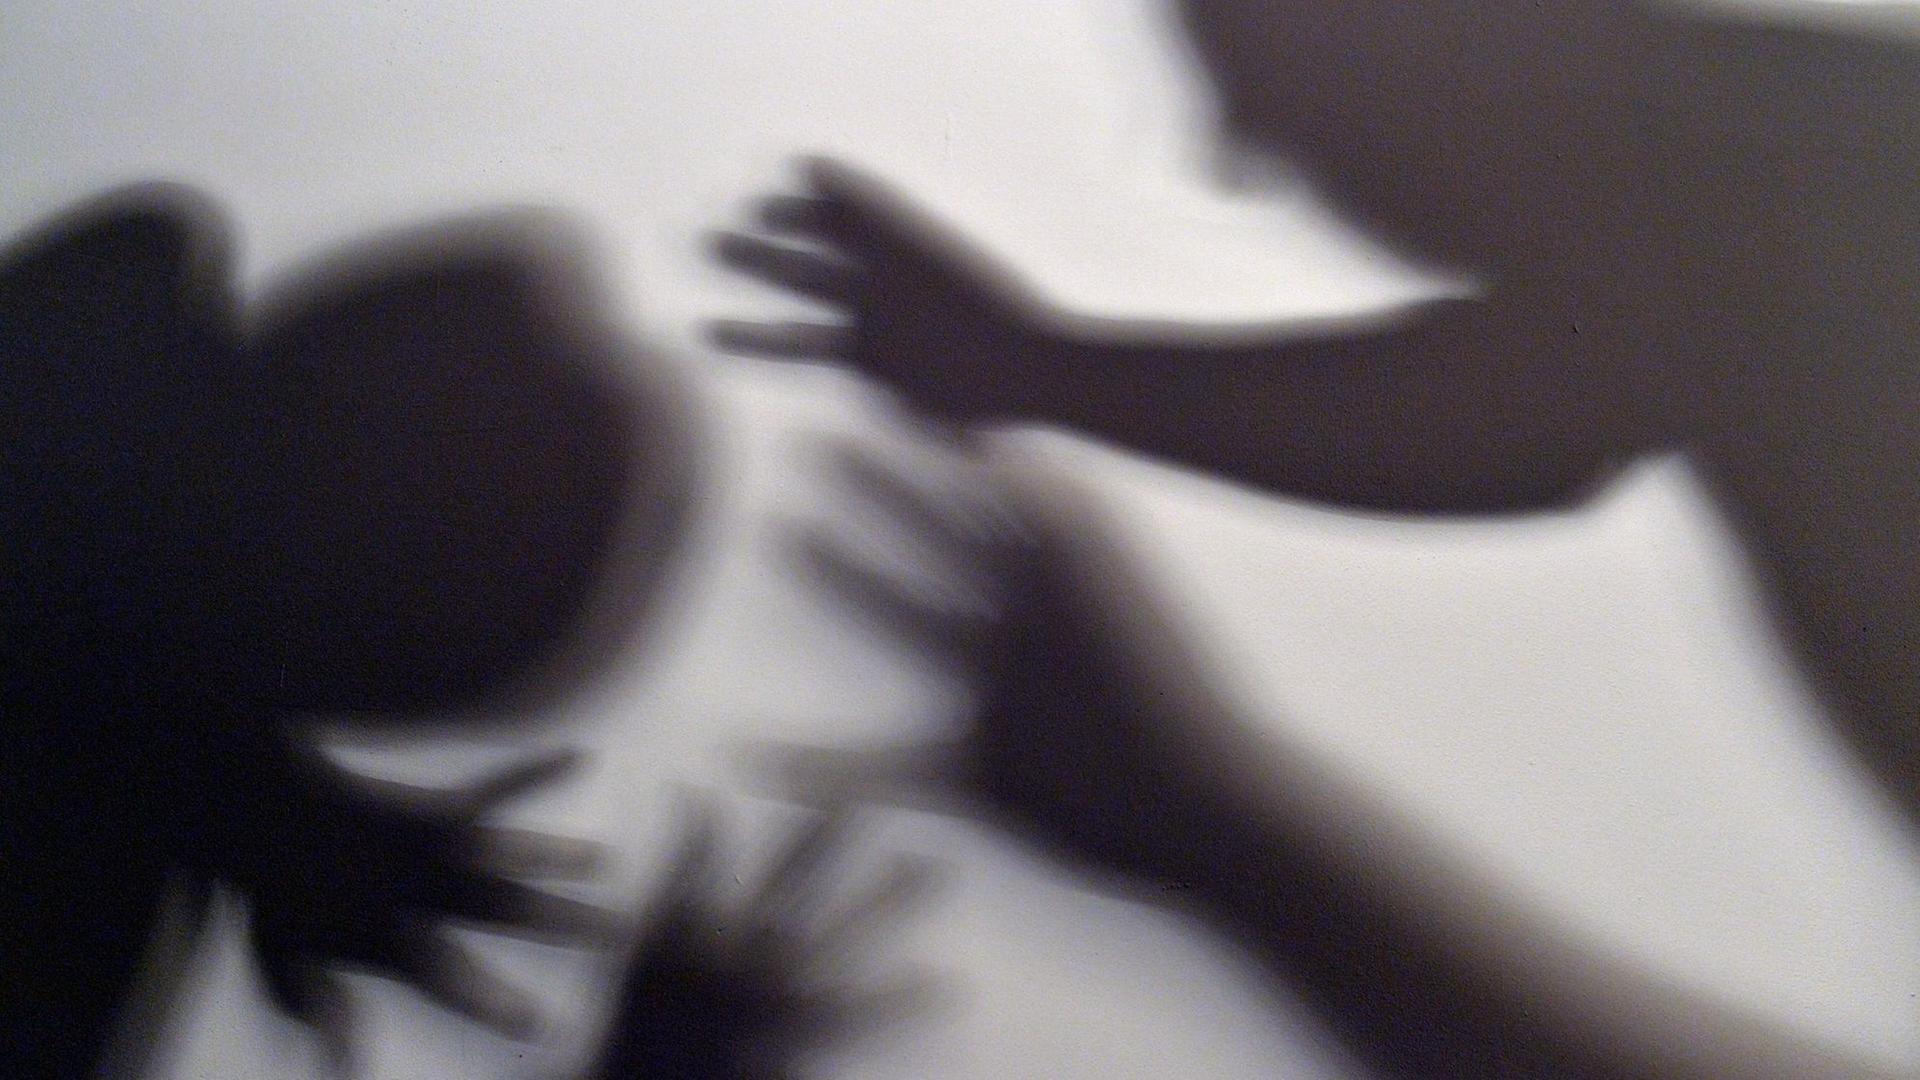 Schatten von Händen und zwei Menschen am Bildrand symbolisieren, wie eine Frau versucht, sich vor der Gewalt eines Mannes zu schützen.